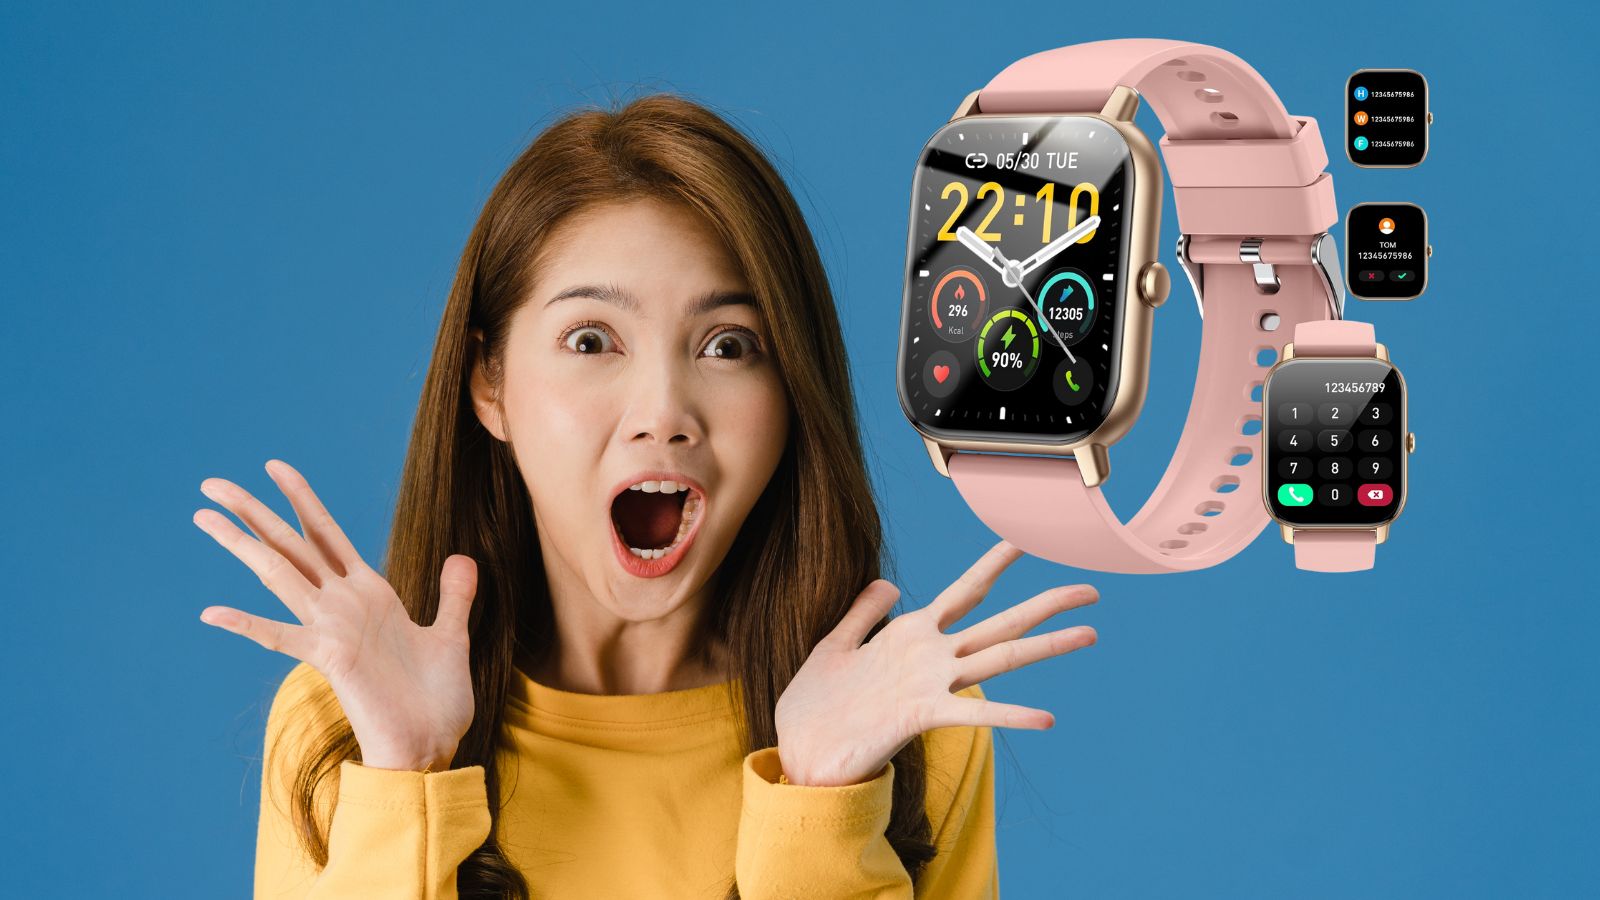 Smartwatch con microfono e display a colori in OFFERTA con il 67% di sconto (AMAZON)